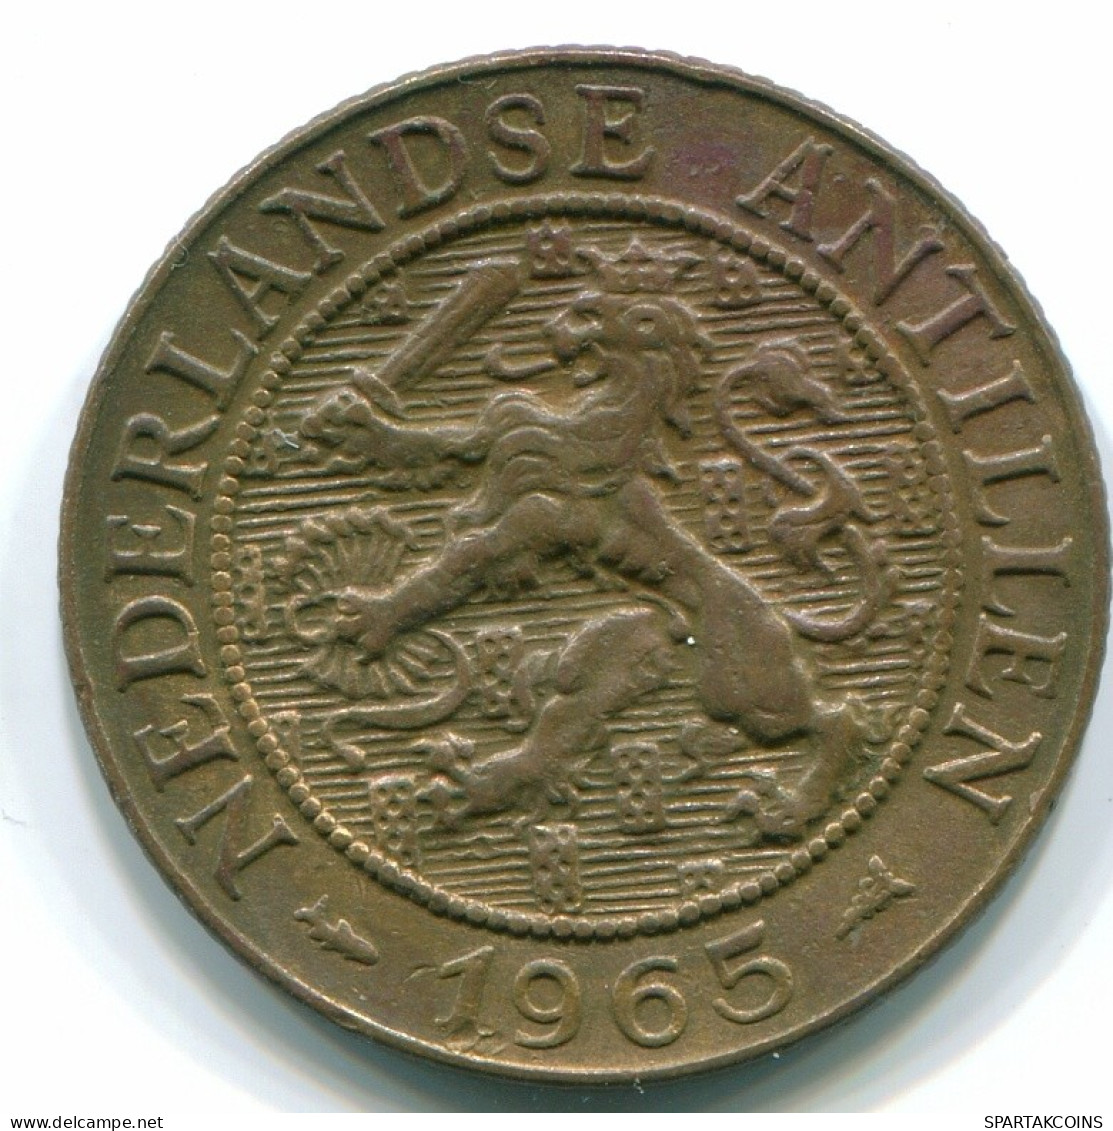 2 1/2 CENT 1965 CURACAO NEERLANDÉS NETHERLANDS Bronze Colonial Moneda #S10241.E.A - Curaçao